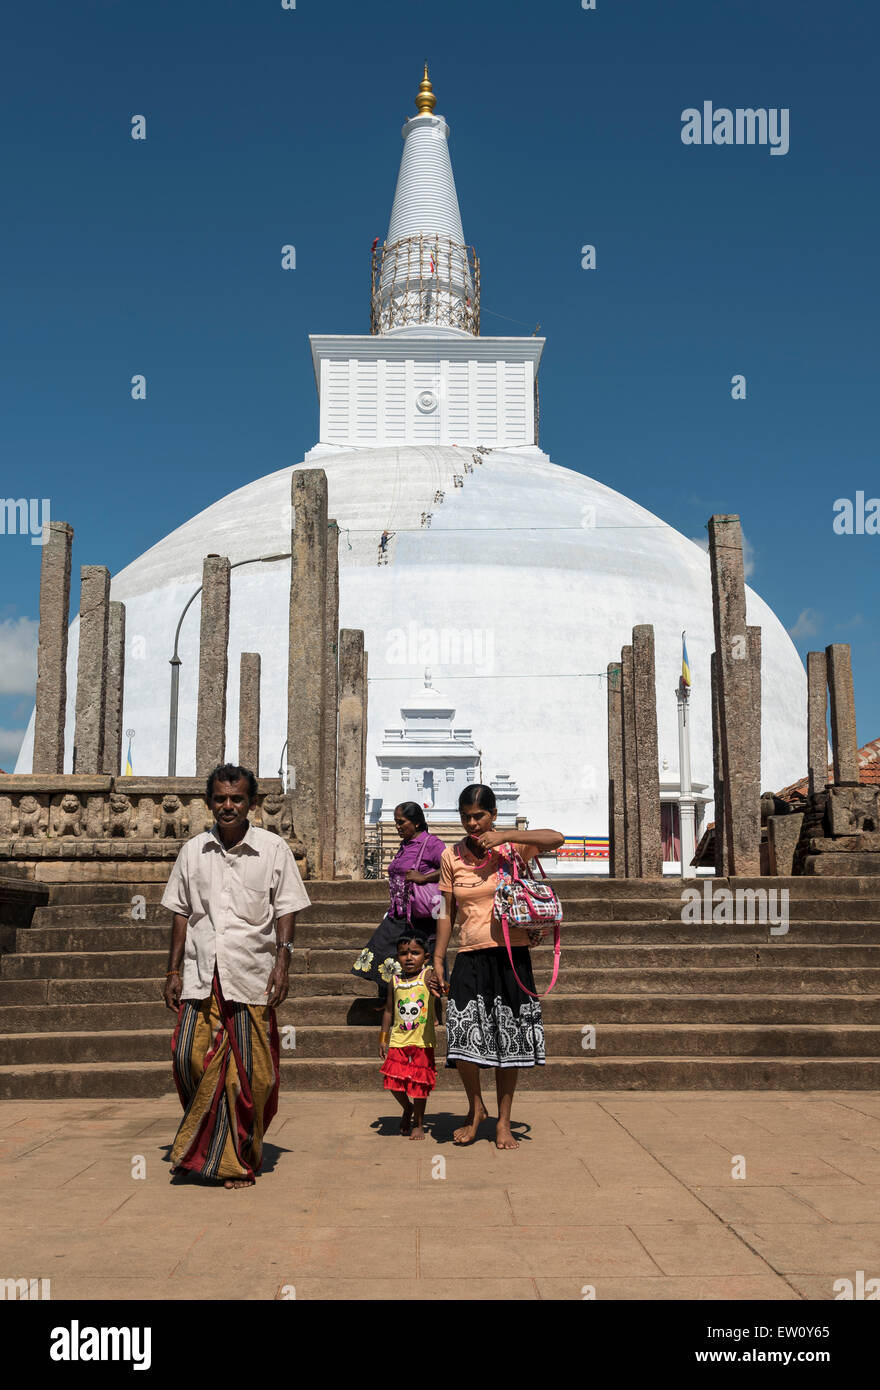 Visitors at Ruwanwelisaya (Ruwanweli Maha Seya) Stupa, Anuradhapura, Sri Lanka Stock Photo